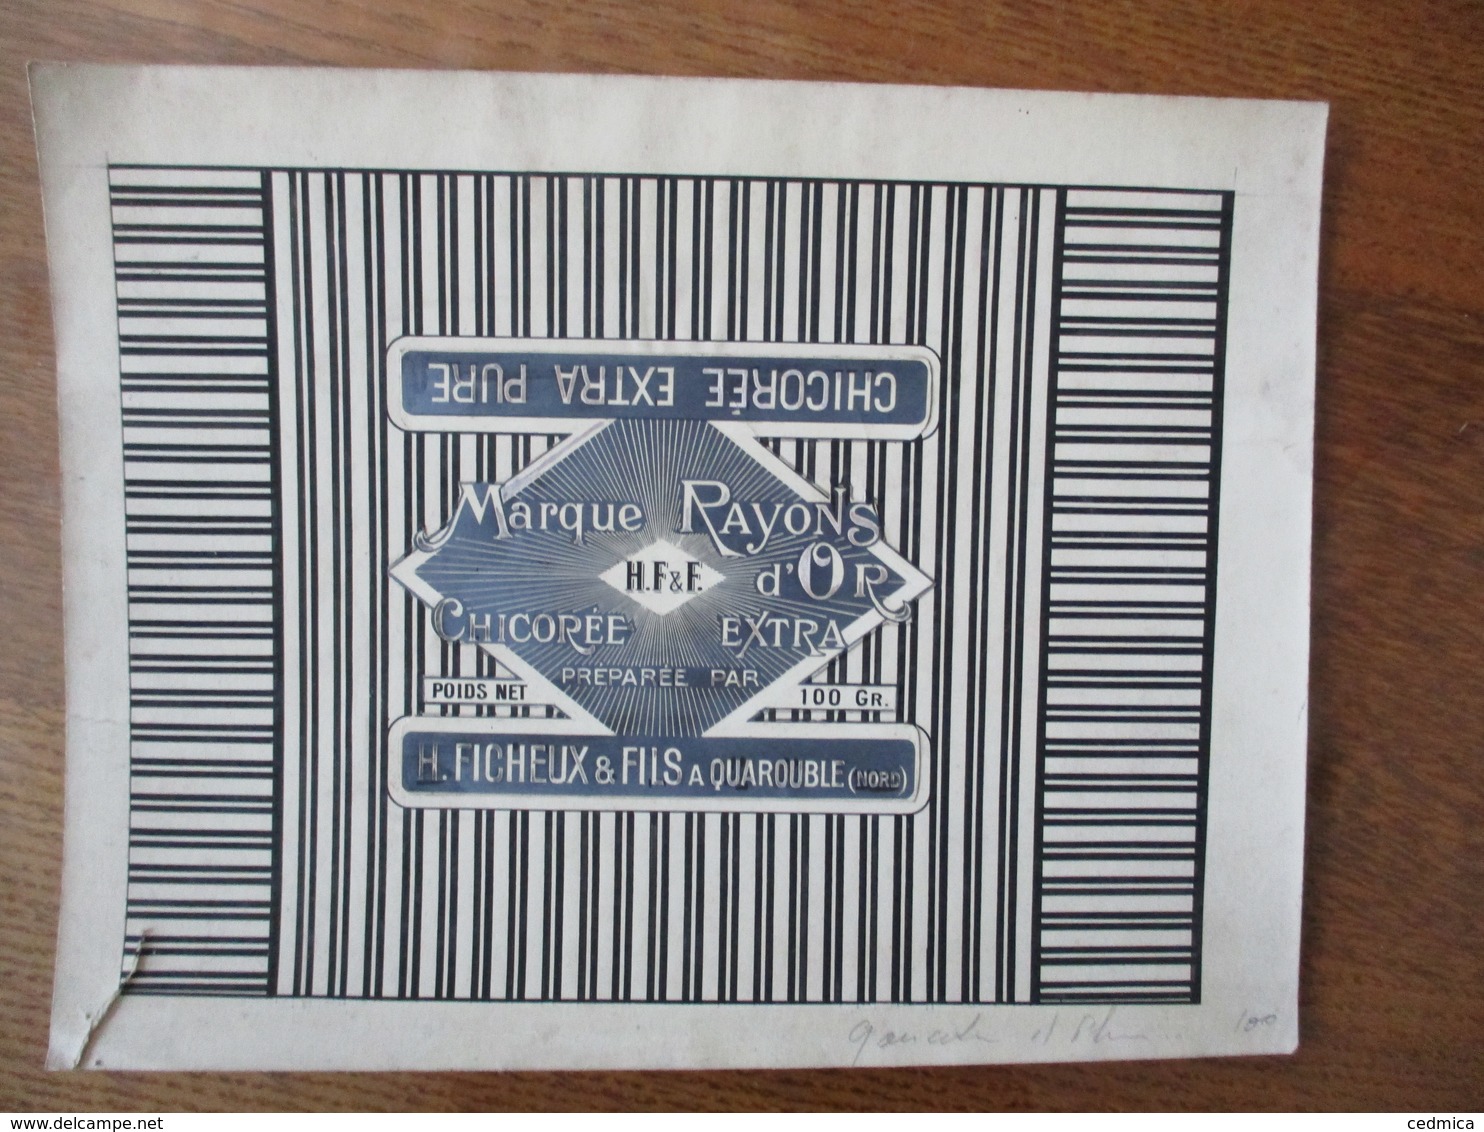 H. FICHEUX & FILS A QUAROUBLE NORD MARQUE RAYON D'OR CHICOREE EXTRA PURE (EPREUVE) 23cm/17,5cm - Pubblicitari